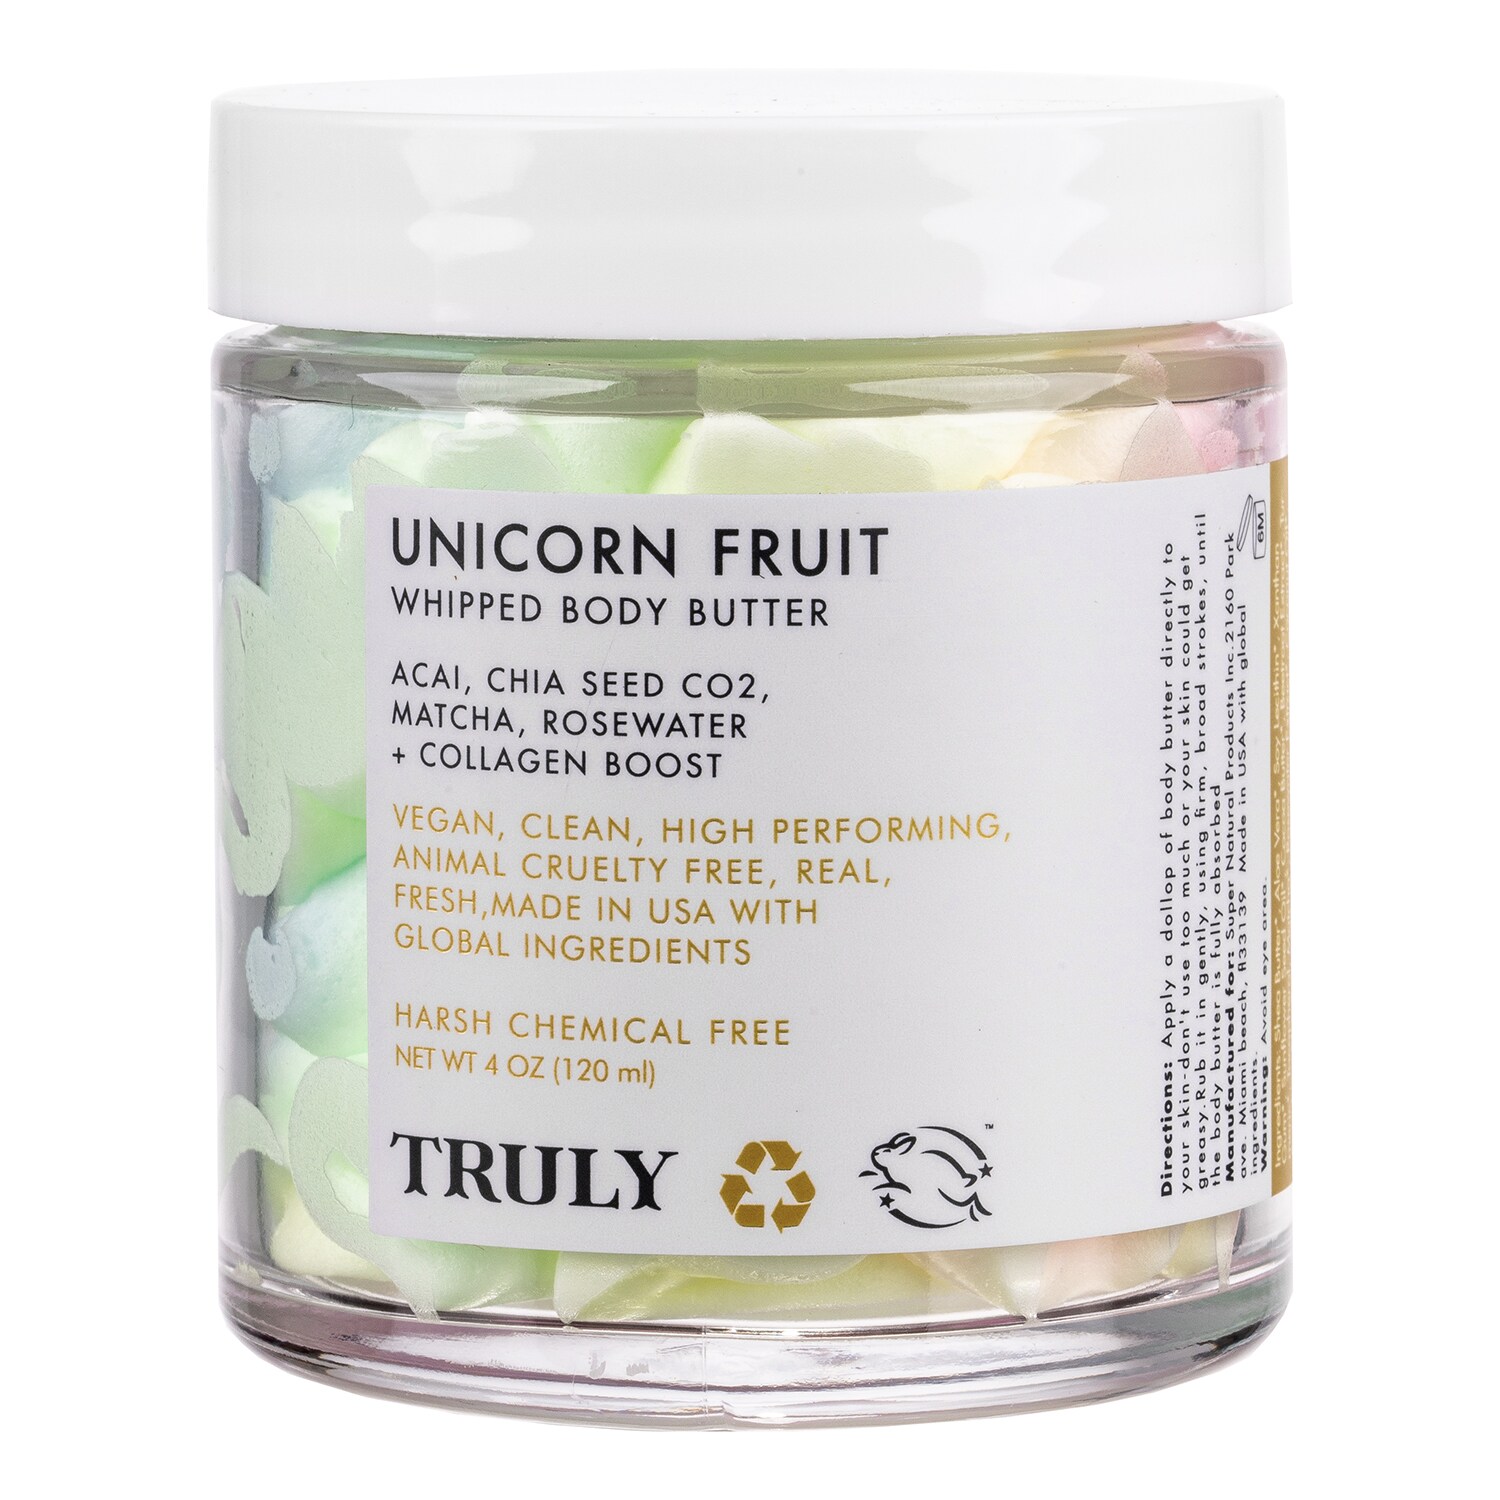 Truly, Unicorn Fruit Whipped Body Butter (Kremowe masło do ciała w kolorze tęczy) - cena, opinie ...